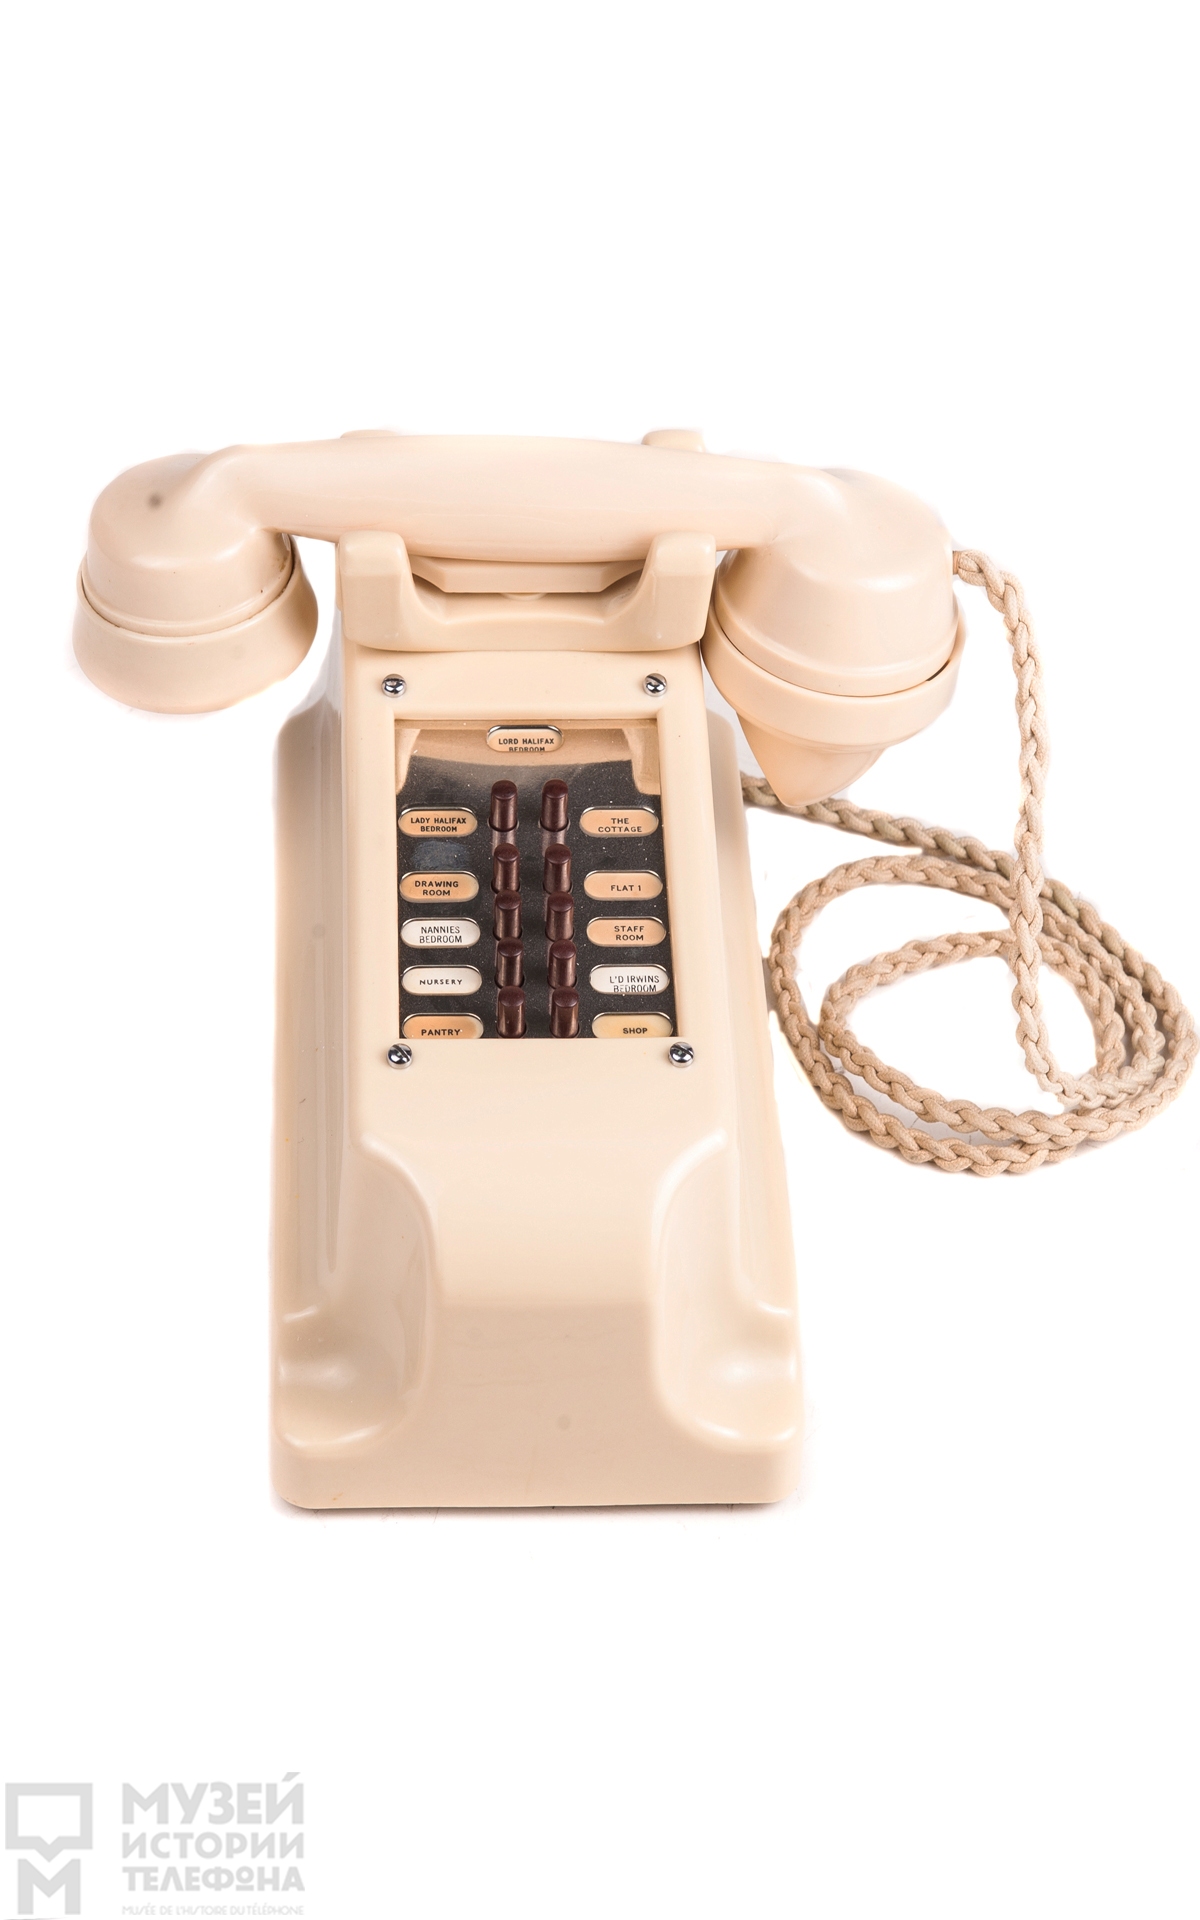 Телефоный аппарат-коммутатор для внутренней связи на 10 линий с микротелефонной трубкой